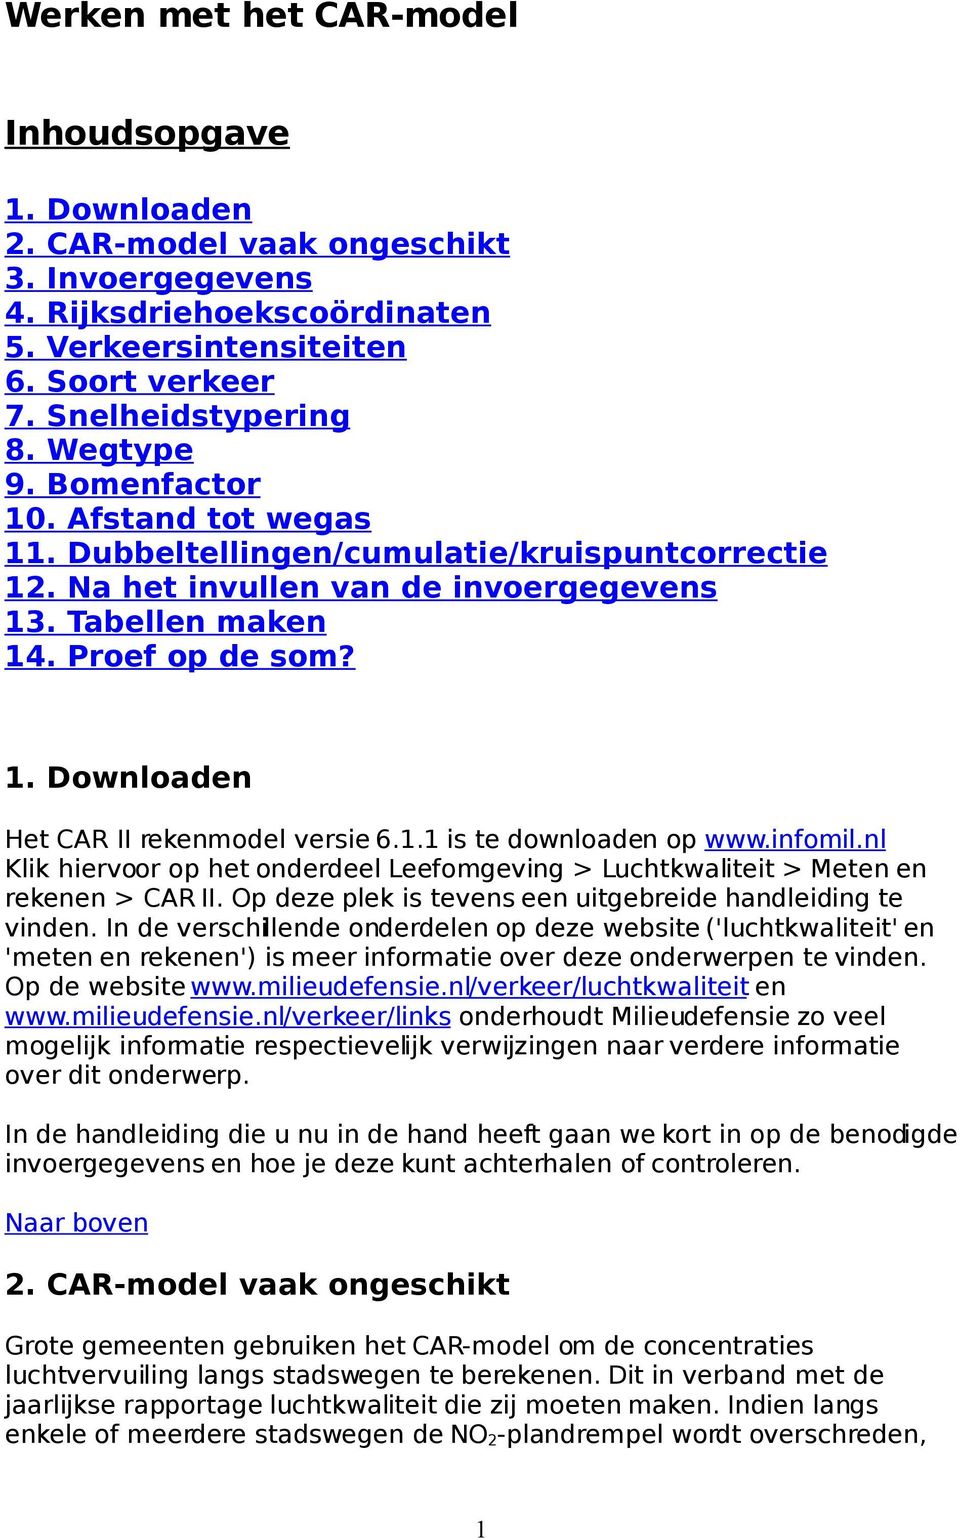 1.1 is te downloaden op www.infomil.nl Klik hiervoor op het onderdeel Leefomgeving > Luchtkwaliteit > Meten en rekenen > CAR II. Op deze plek is tevens een uitgebreide handleiding te vinden.